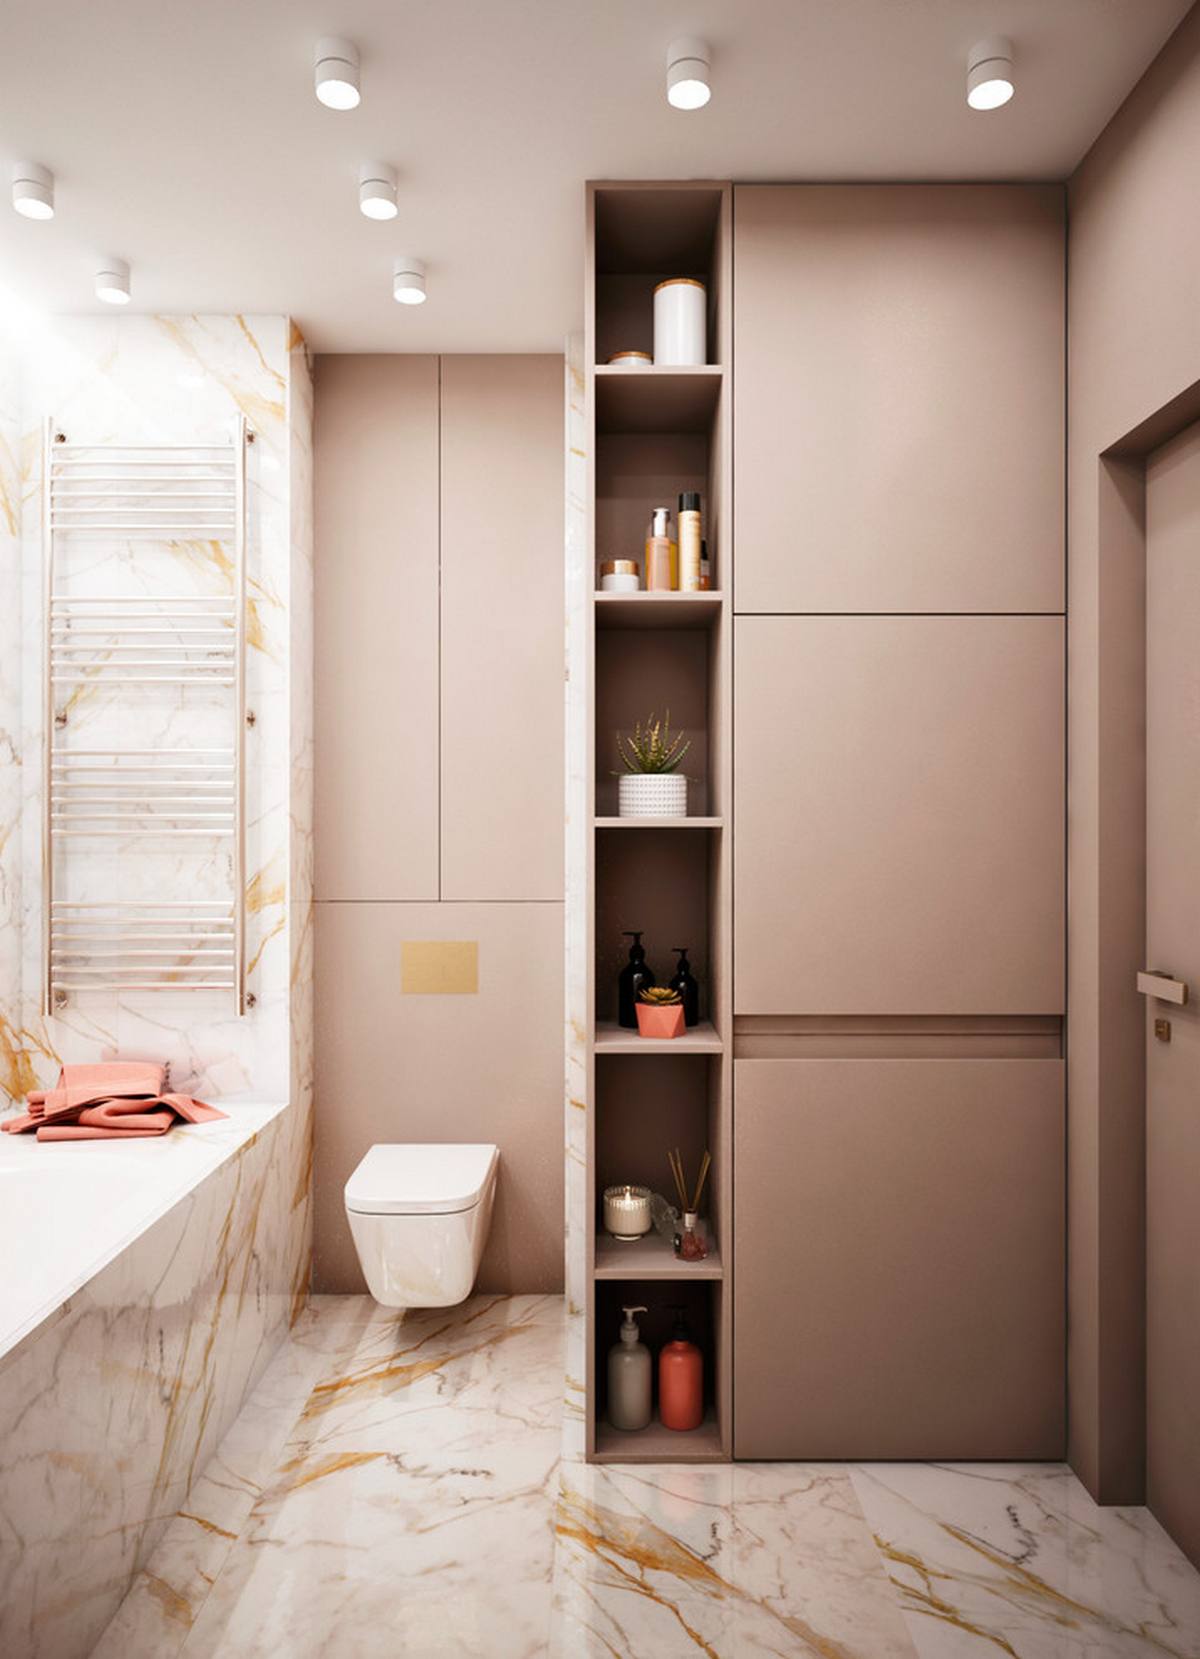 Bồn toilet gắn tường giúp giải phóng diện tích mặt sàn, bên cạnh là hệ thống tủ lưu trữ cao kịch trần, cả tủ khép kín và kệ mở nhằm tối ưu hóa bức tường cho chức năng lưu trữ.